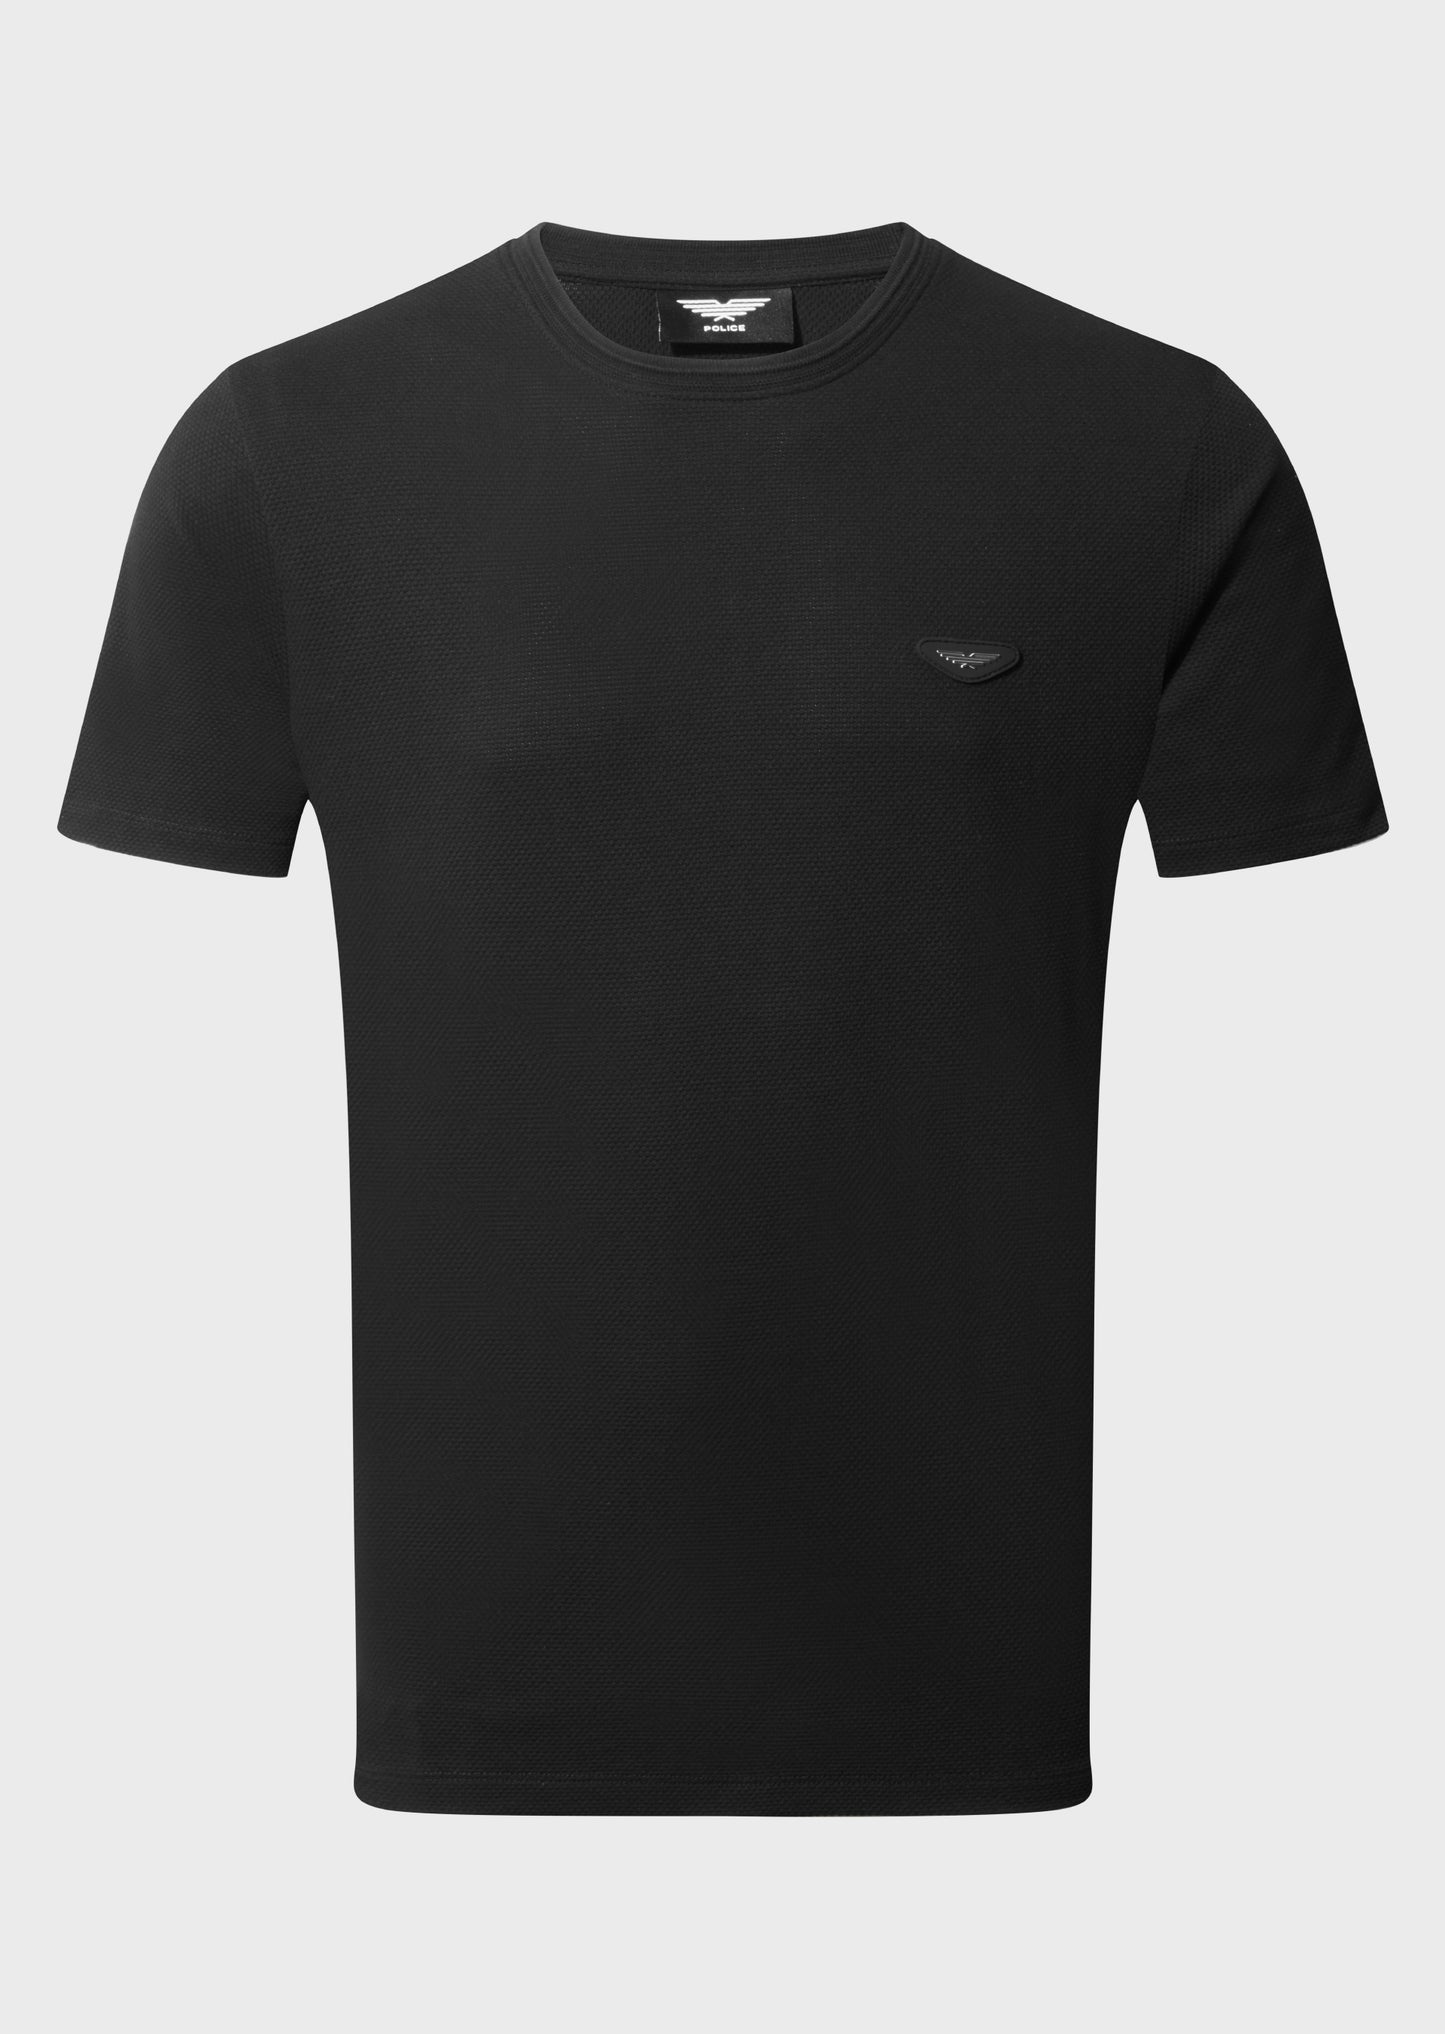 Niven Black T-Shirt